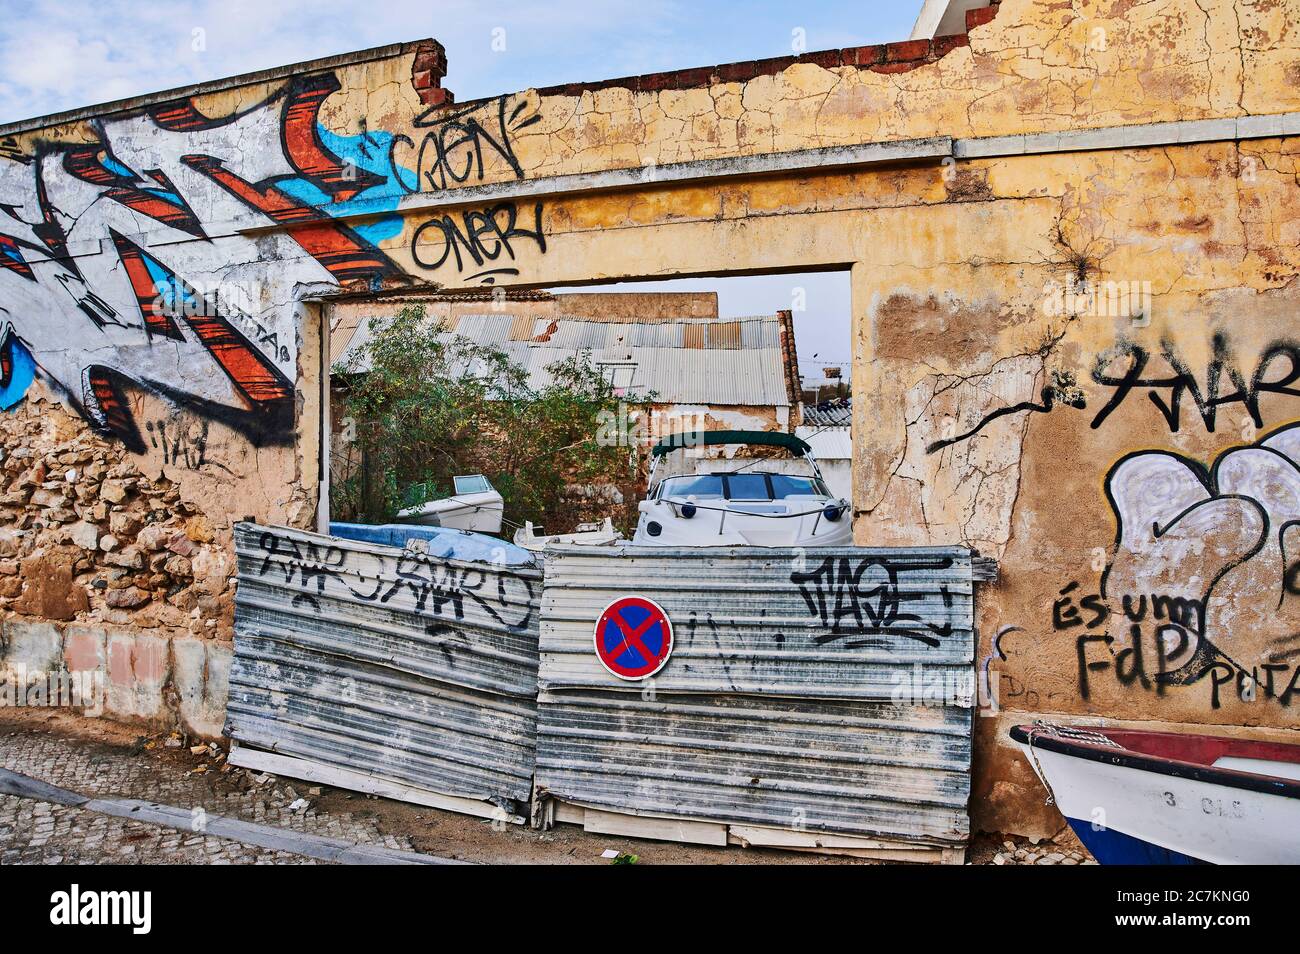 Europa, Portogallo, Algarve, Litoral, Sotavento, Distretto di Faro, Olhao, fragile parete in pietra con graffiti, temporaneamente bloccato l'accesso Foto Stock